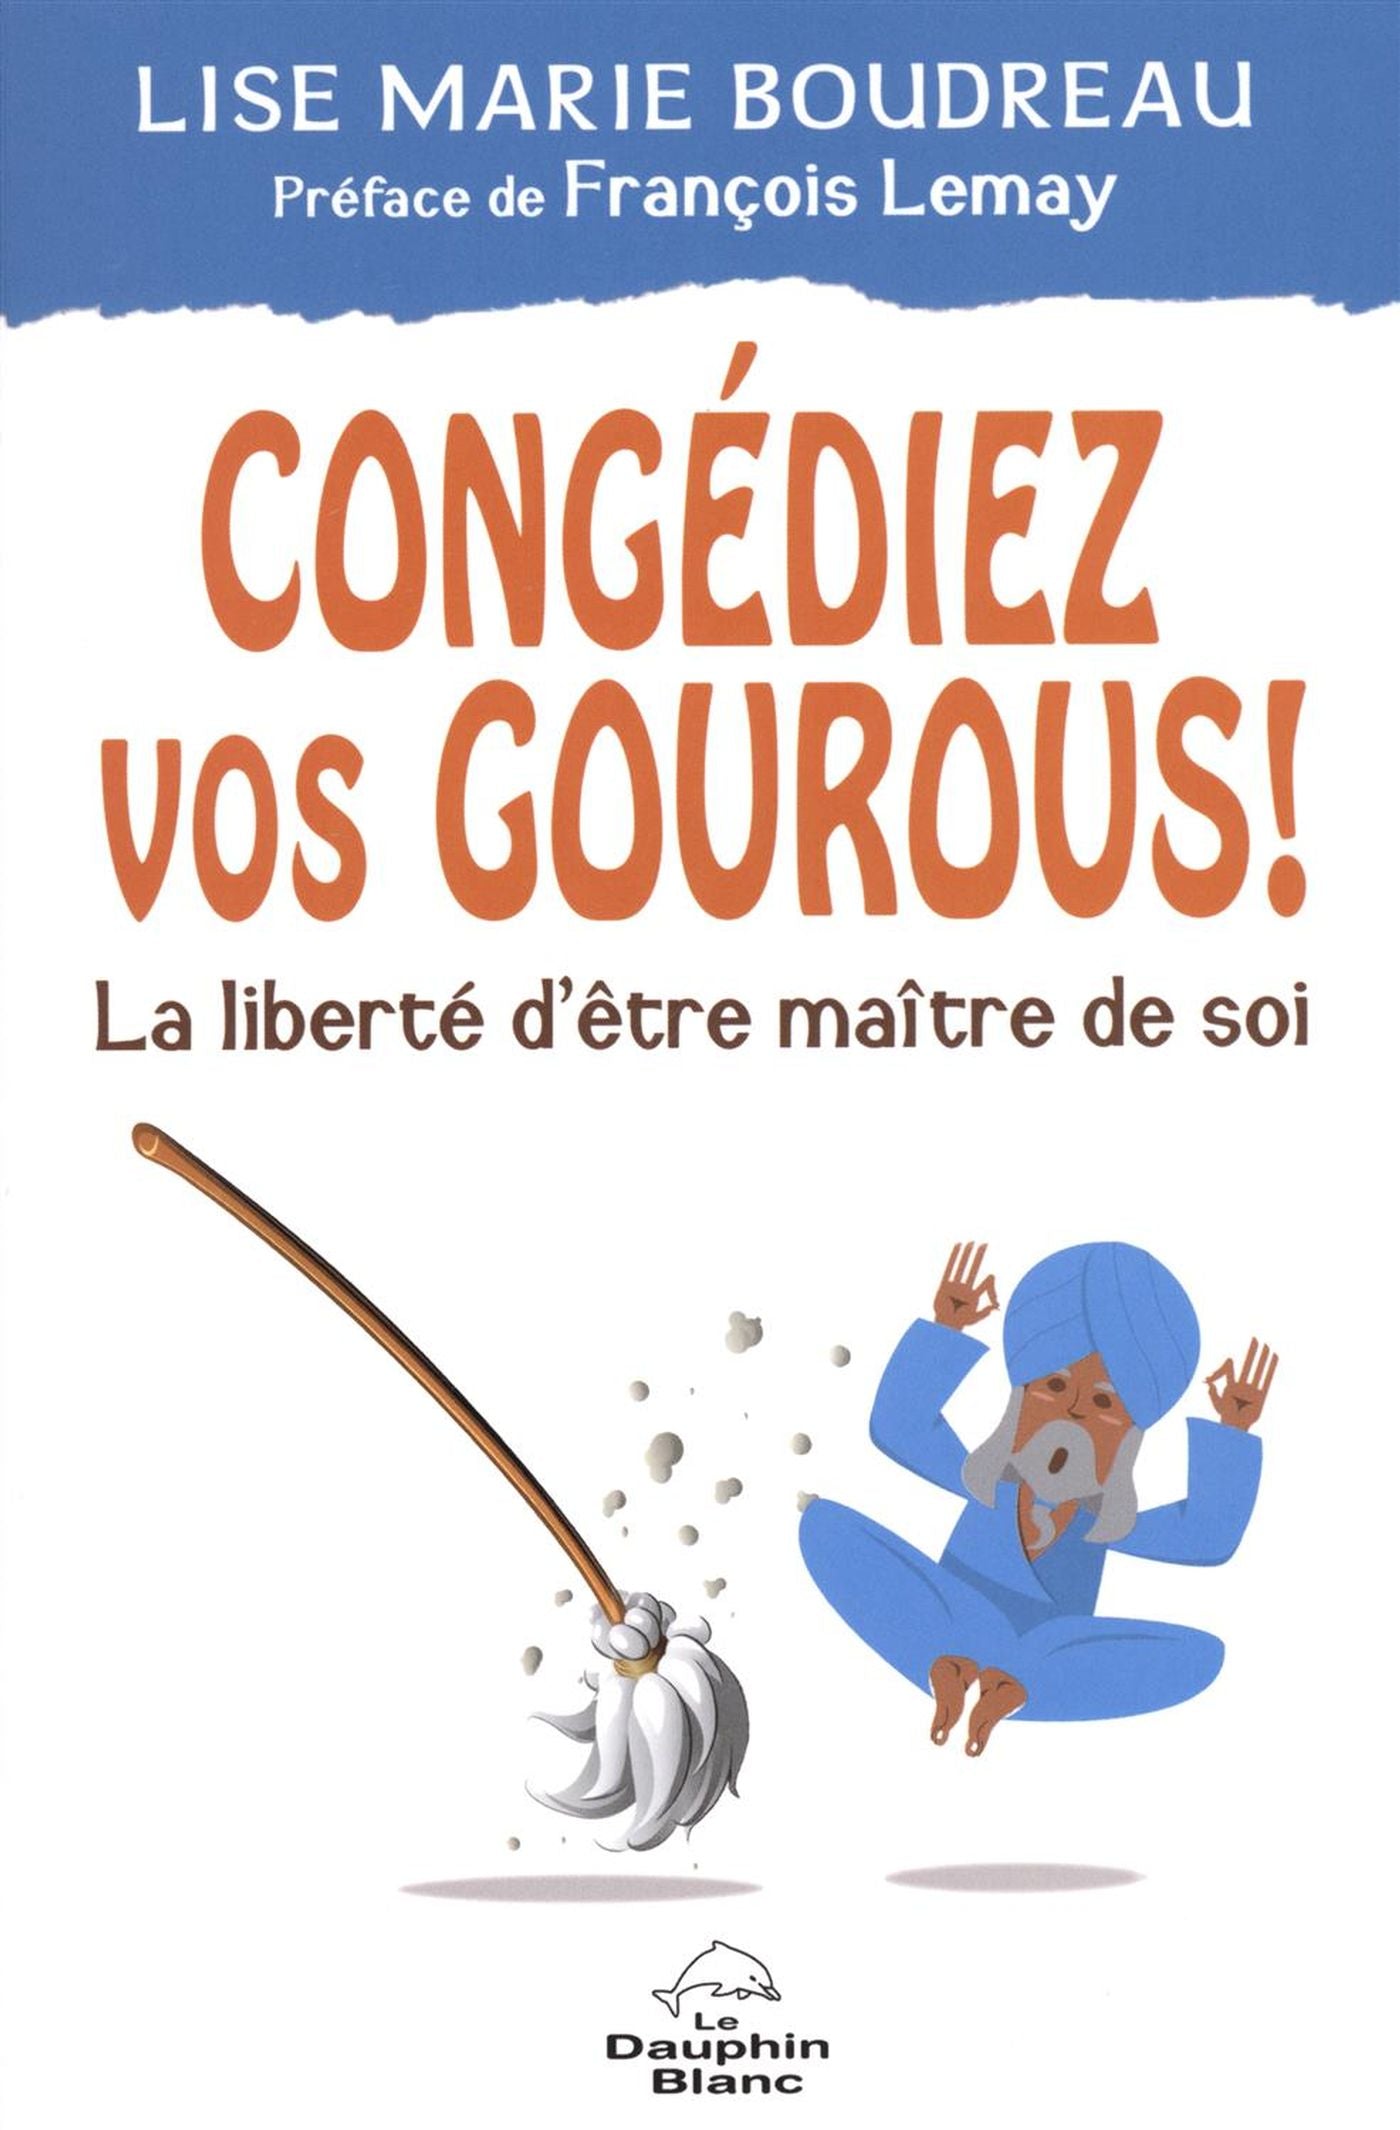 Congédiez vos gourous! : La liberté d'être maître de soi - Lise Marie Boudreau